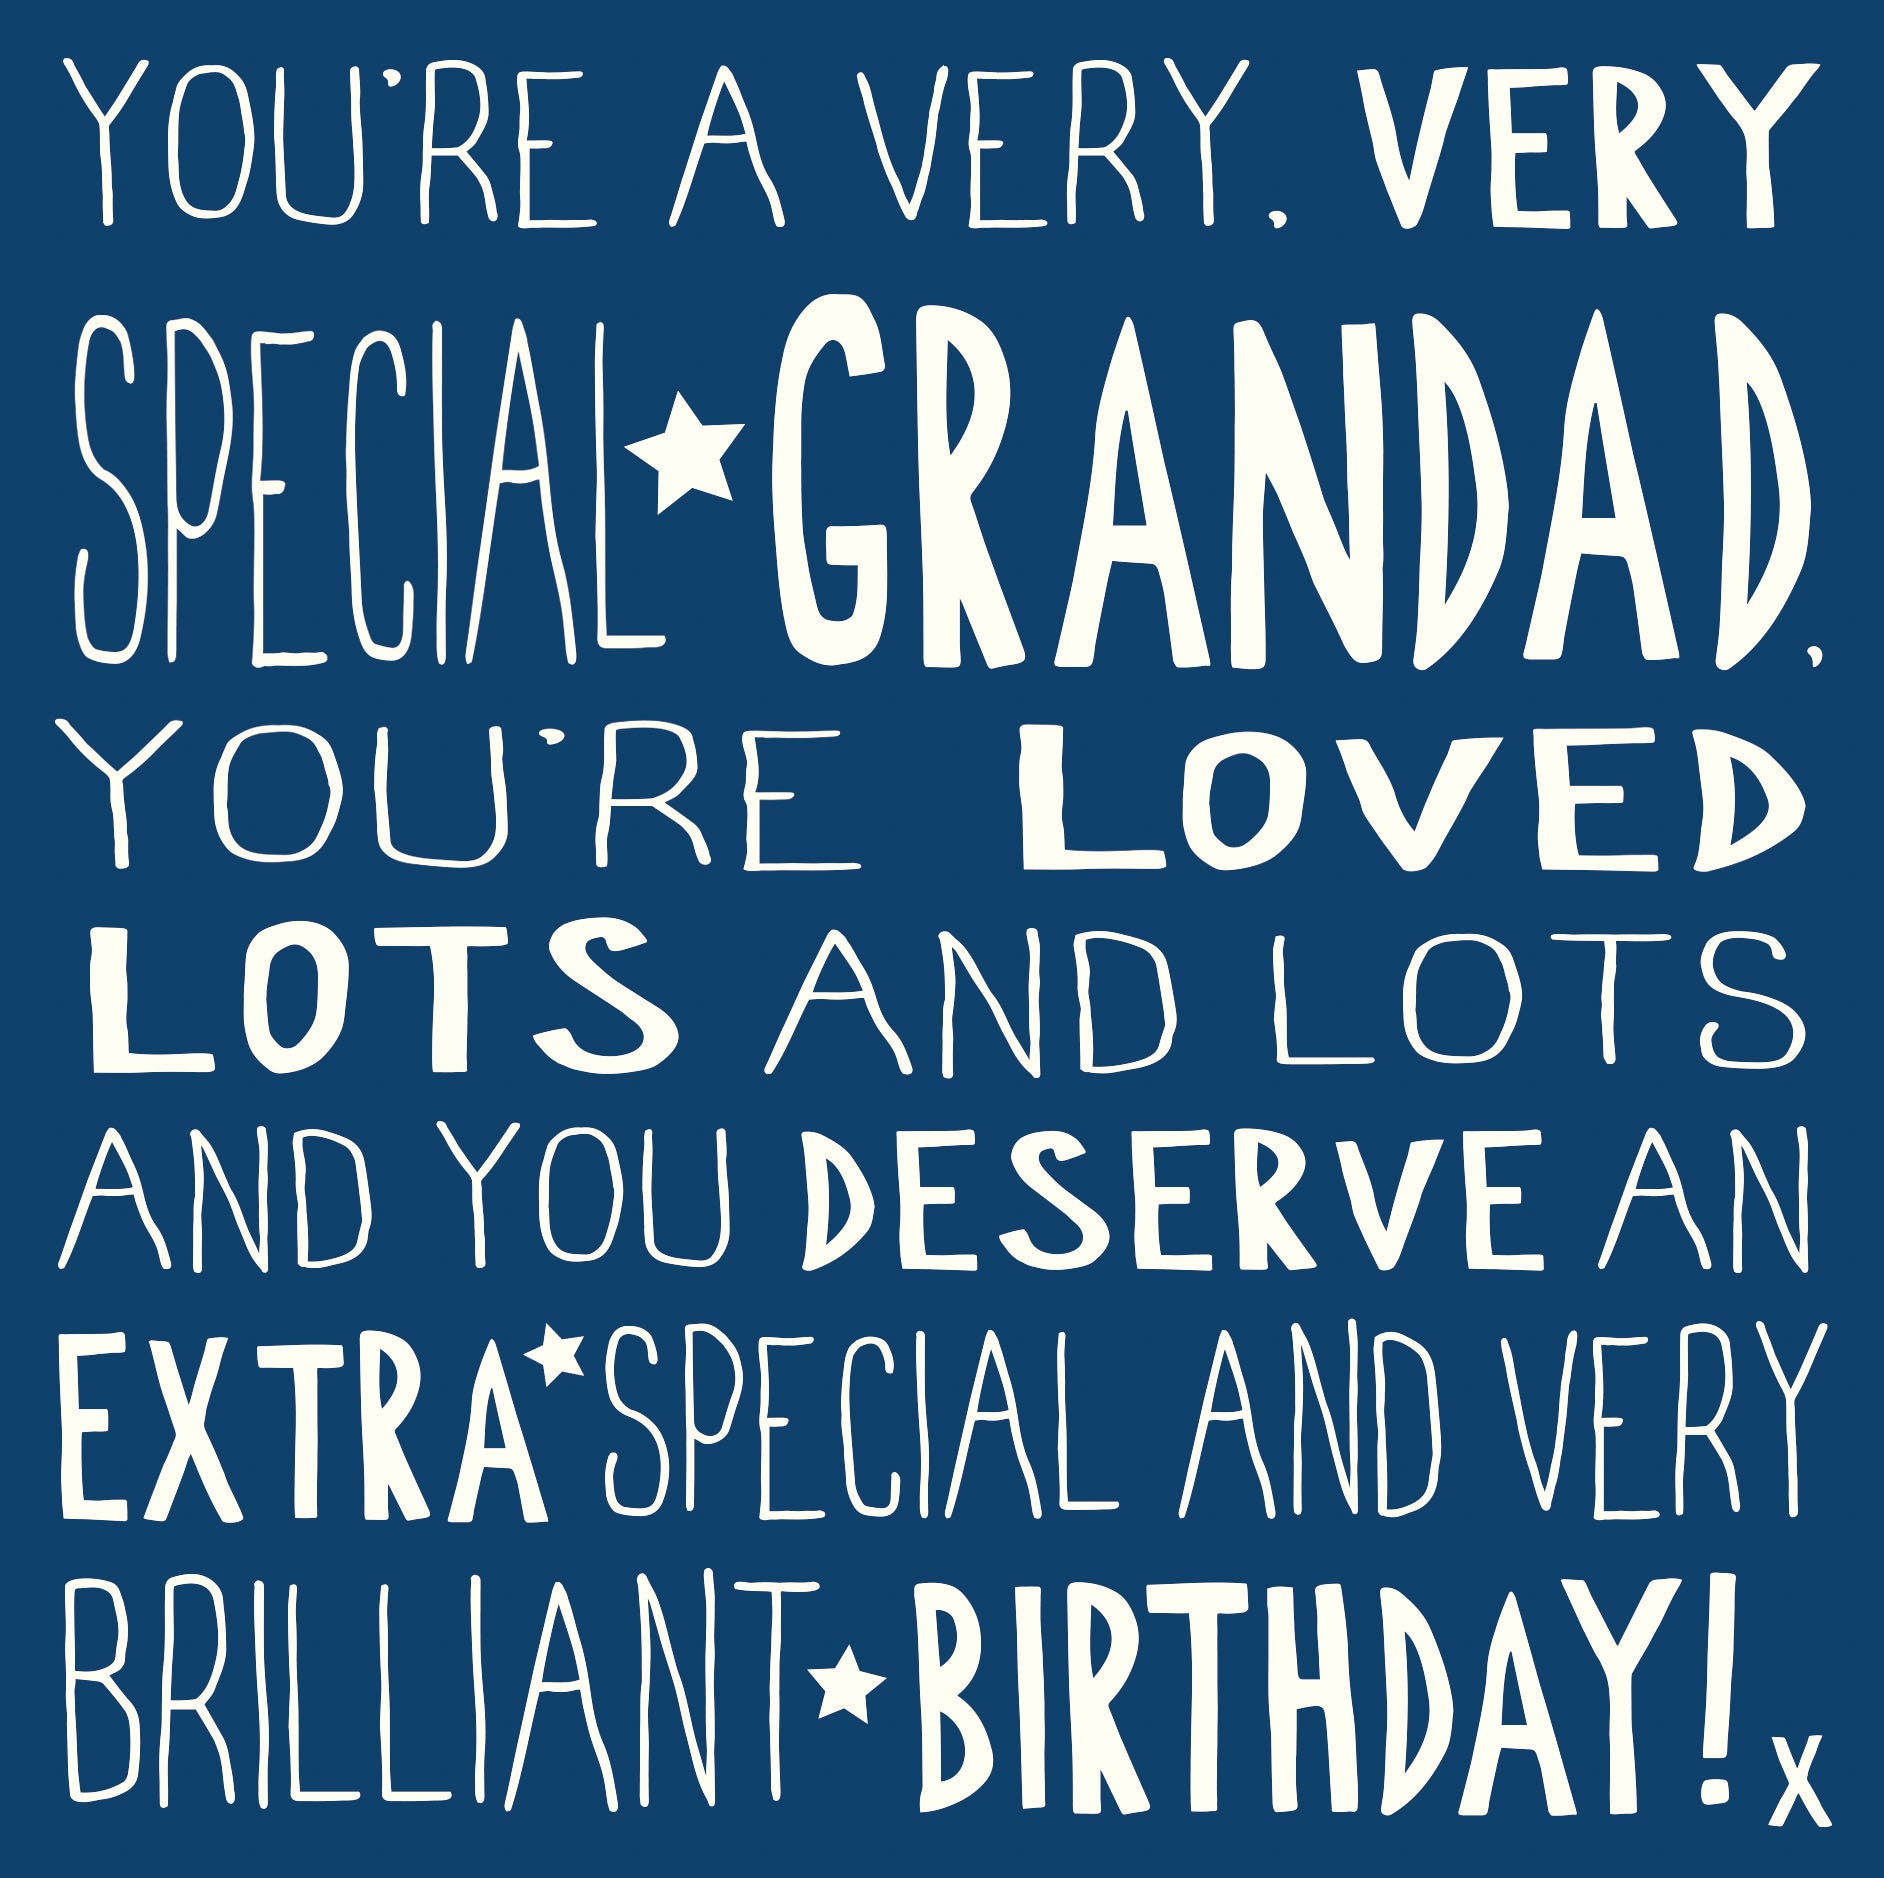 Very Very Special Grandad Birthday Card from Penny Black